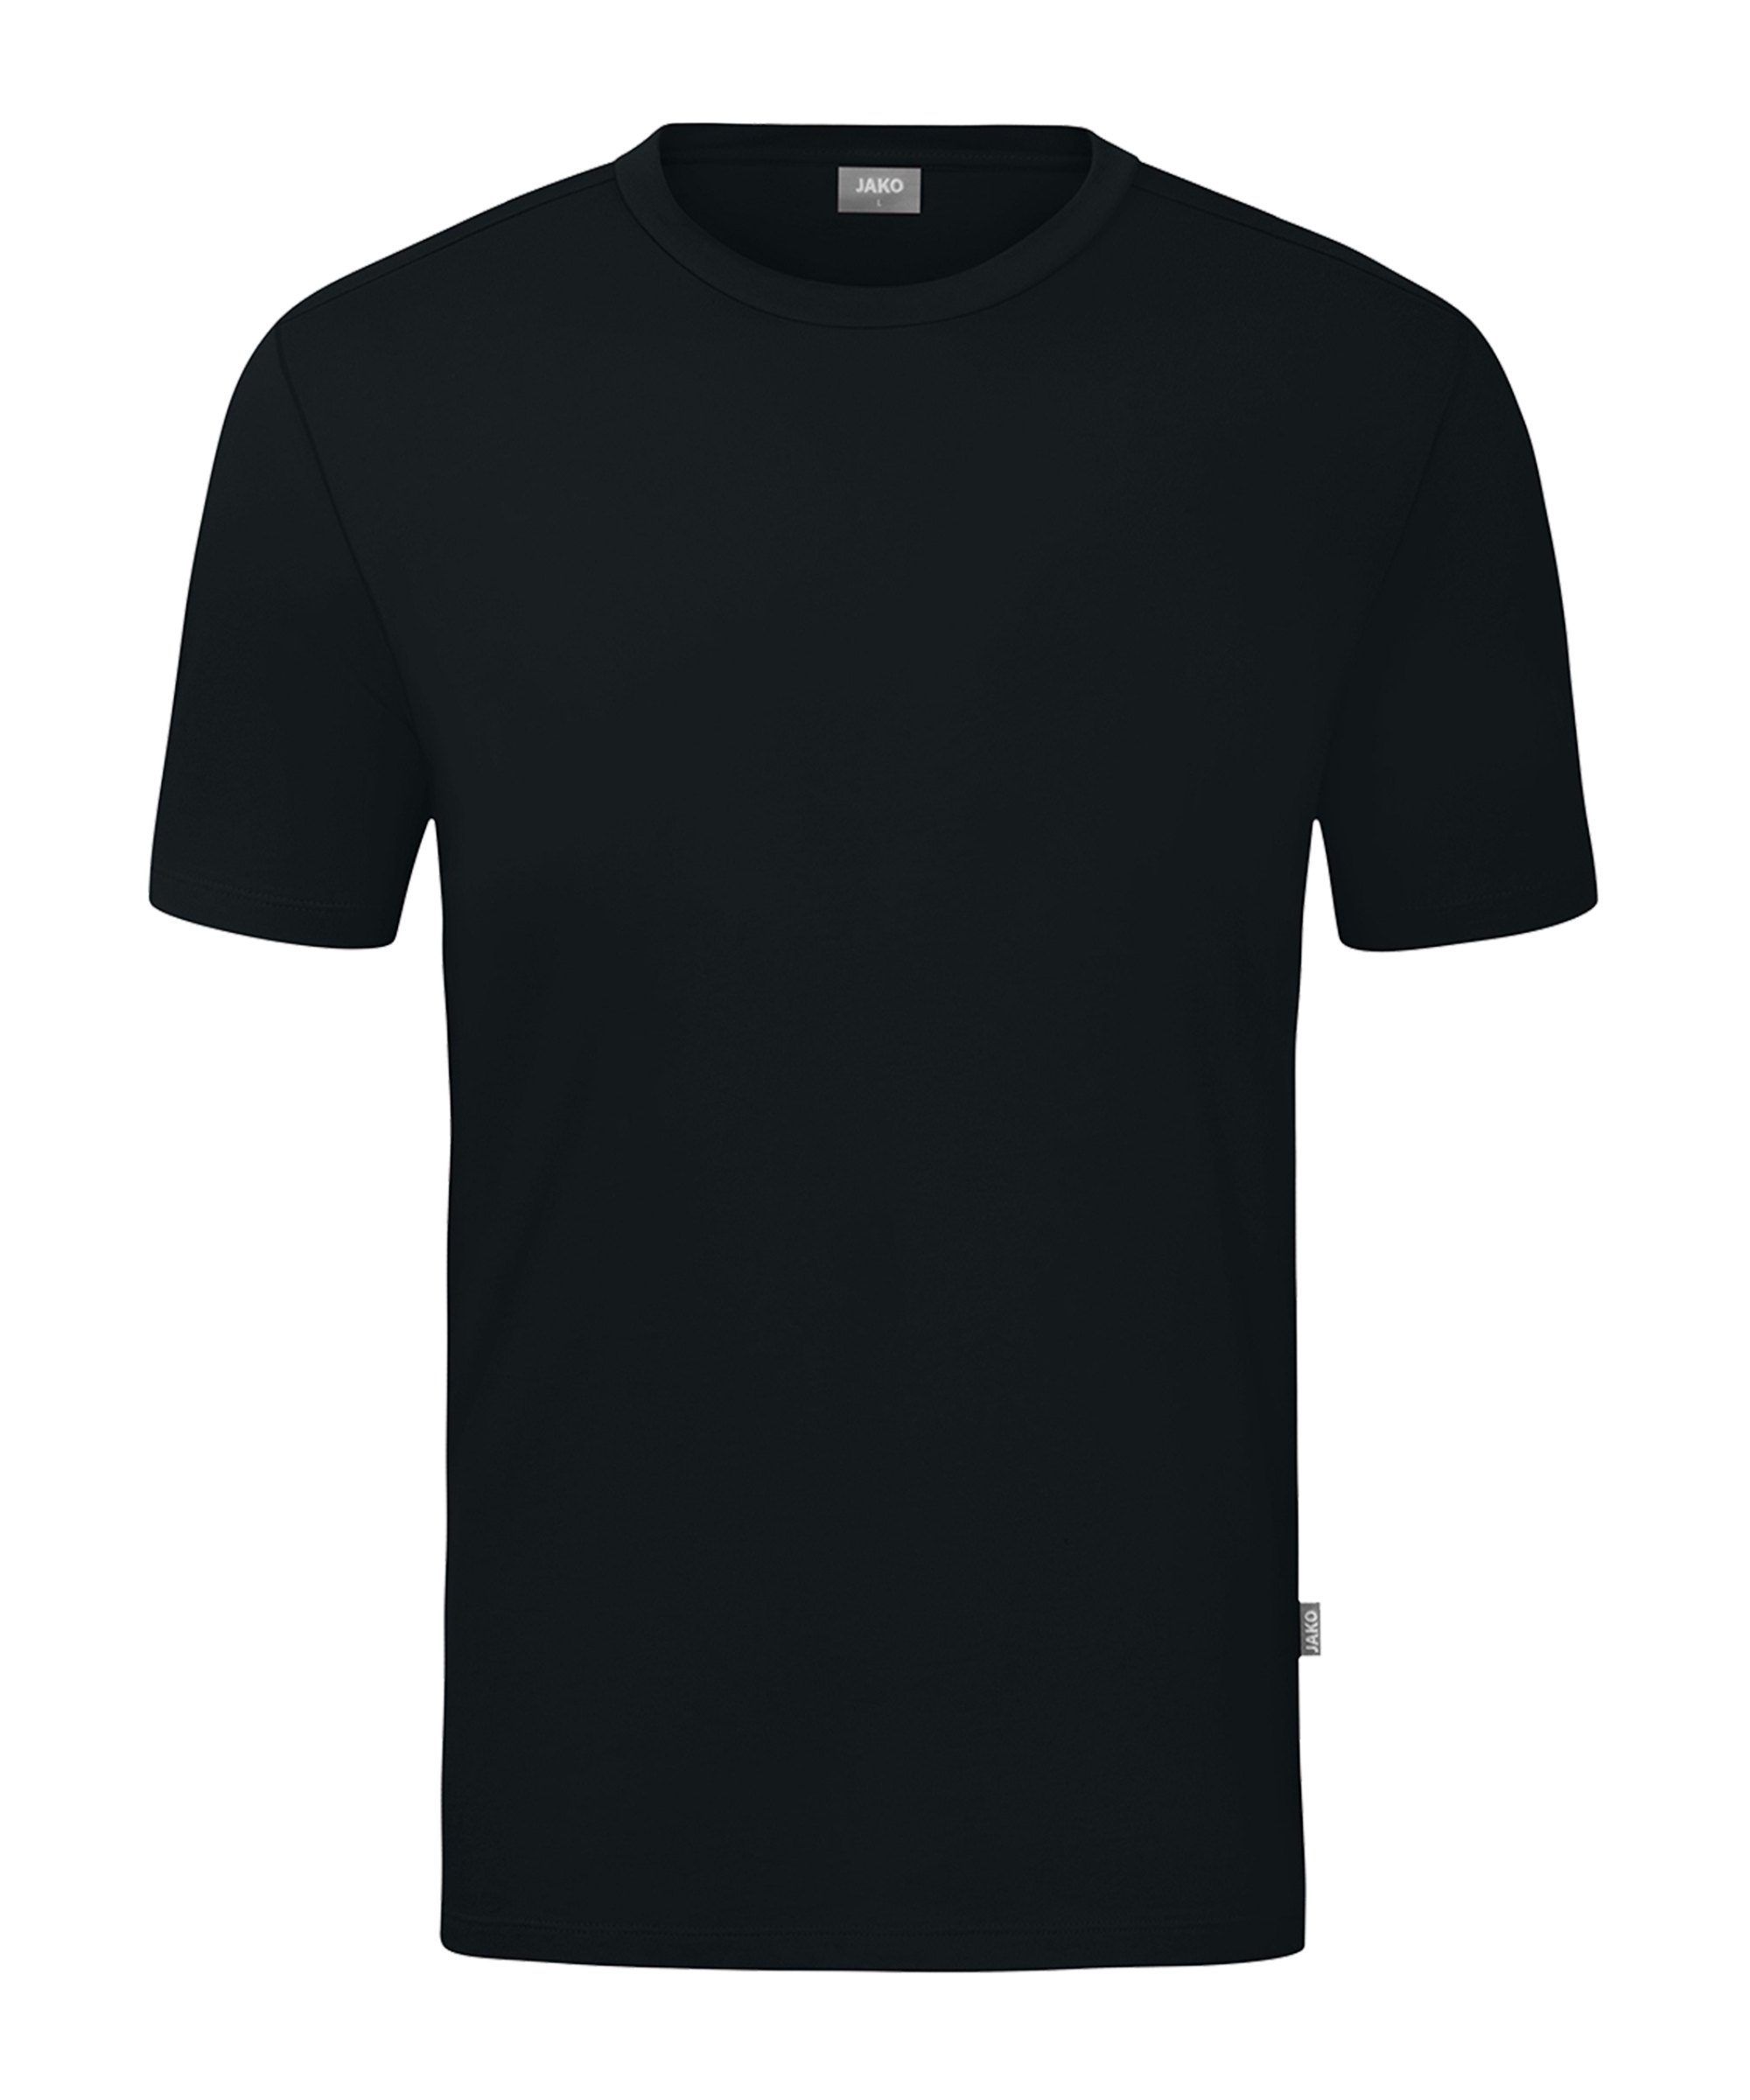 JAKO Organic T-Shirt Schwarz F800 - schwarz